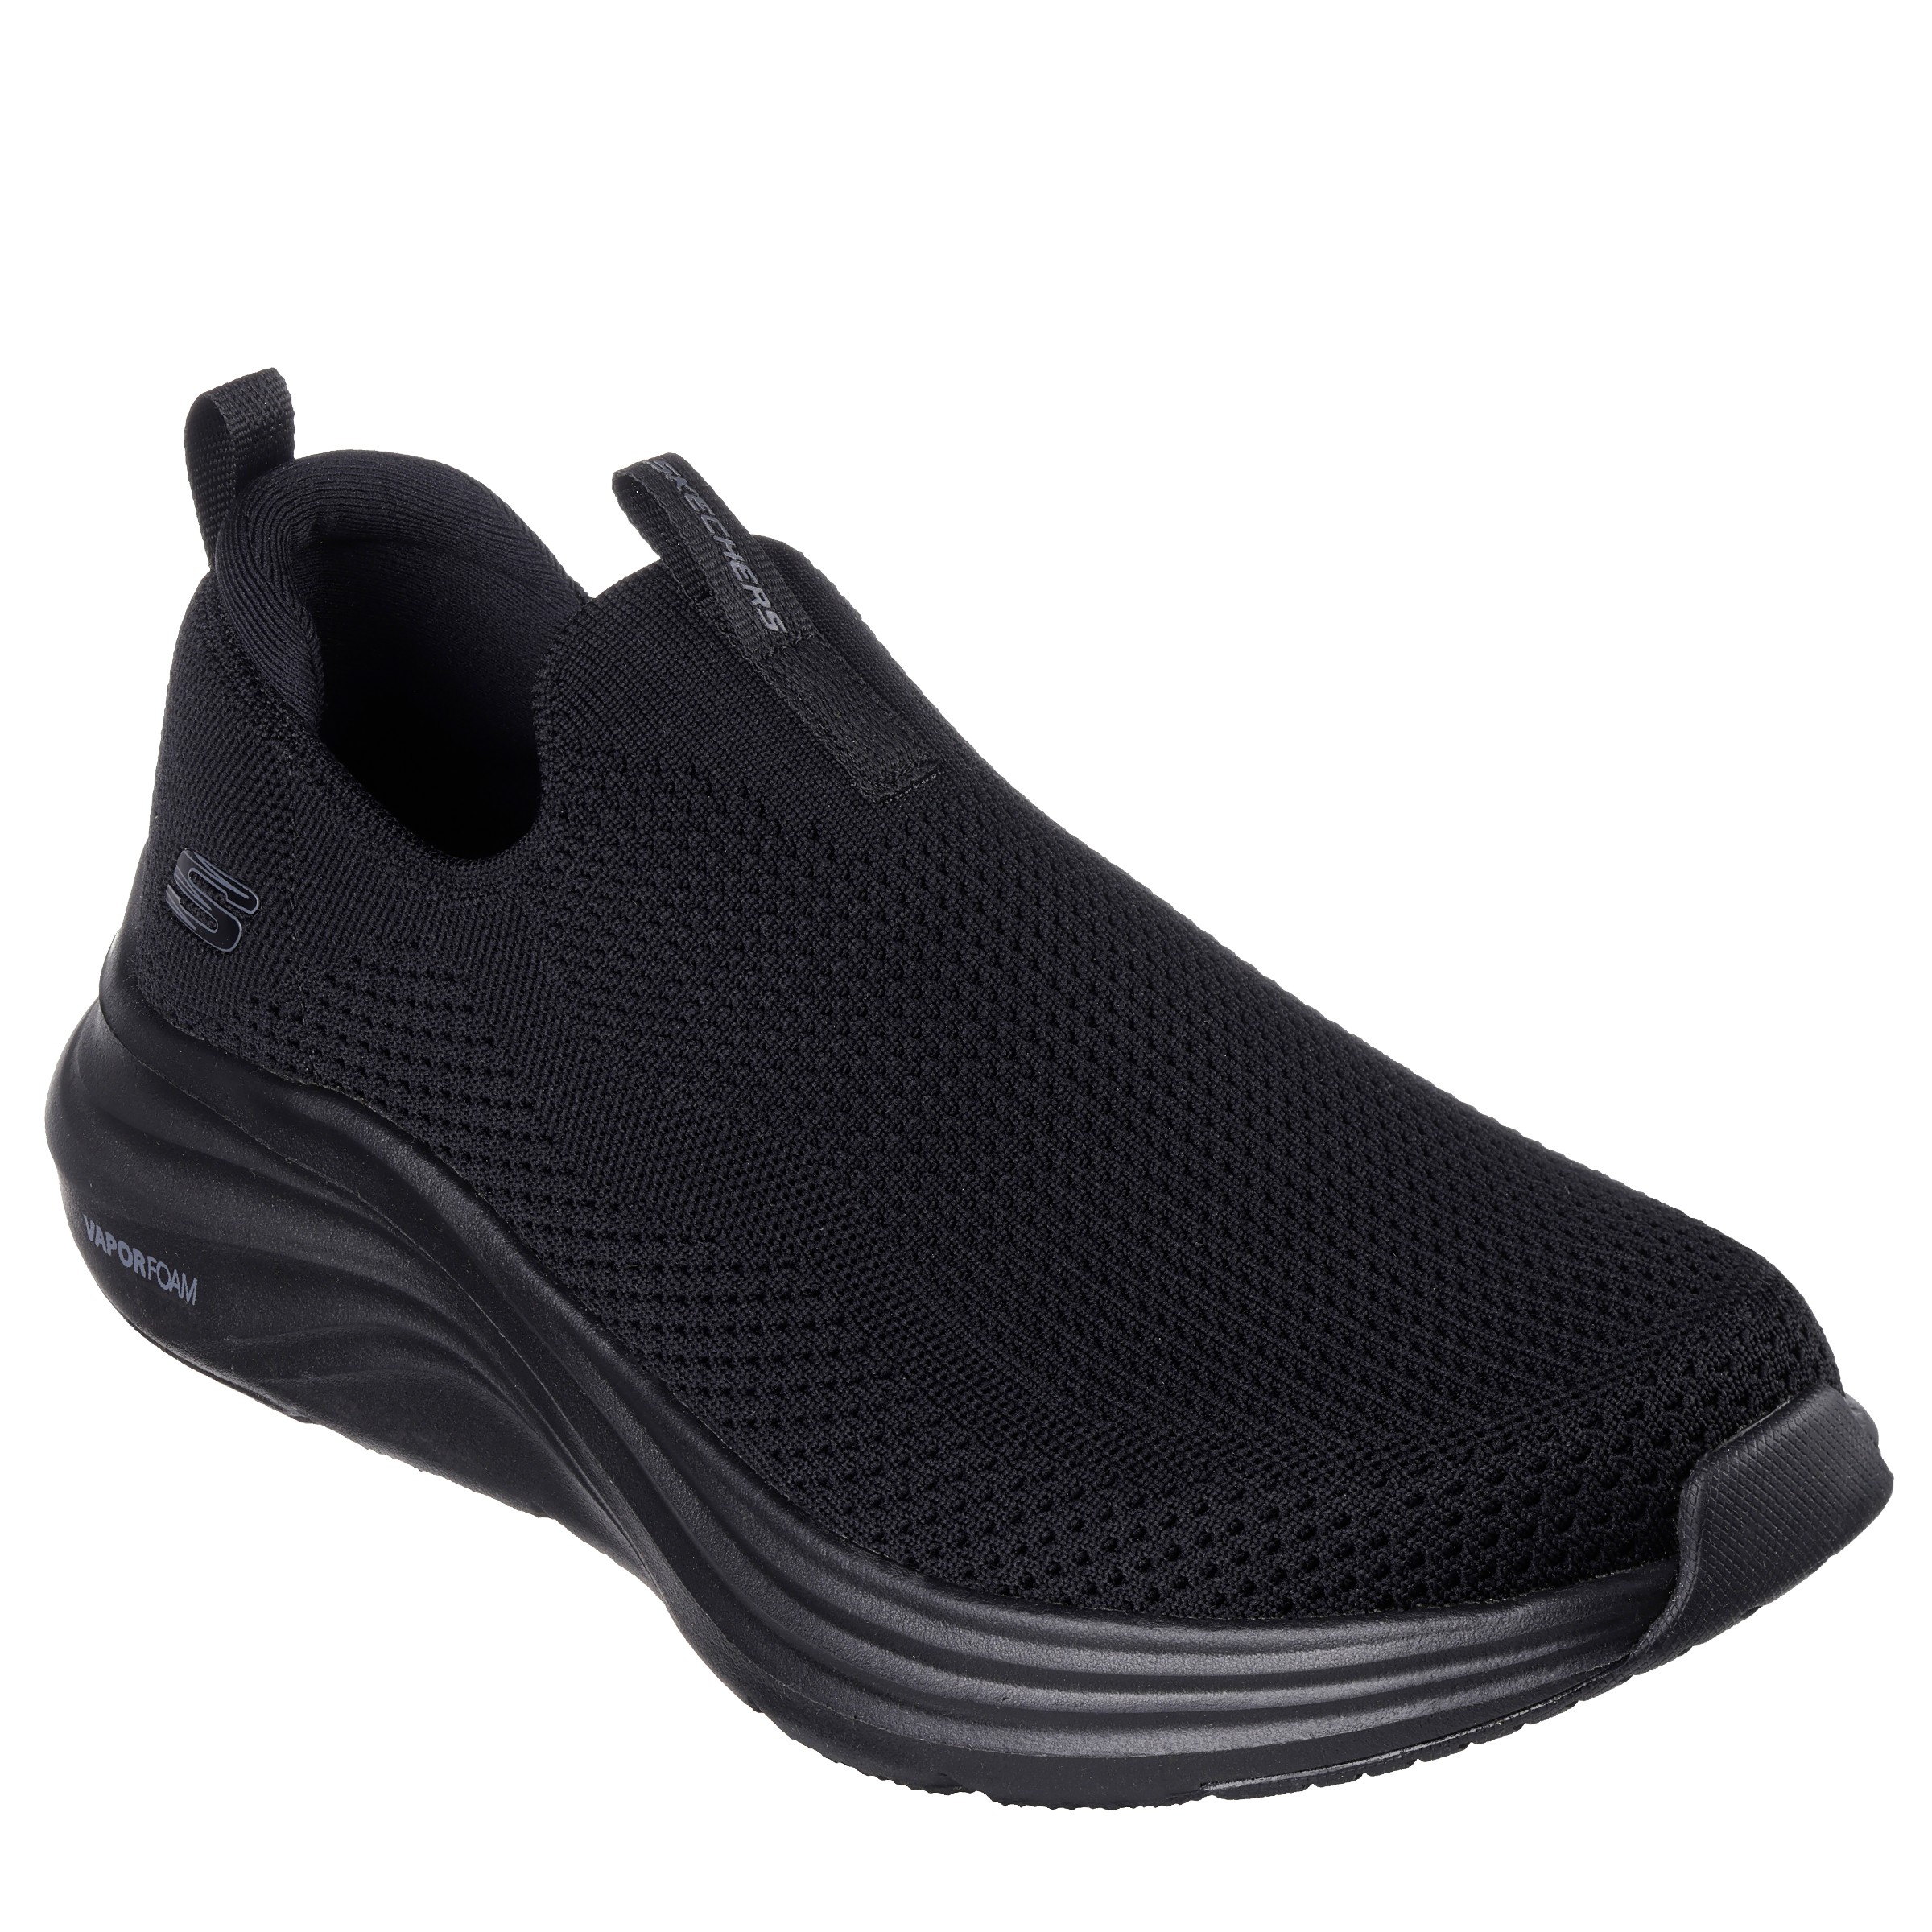 Men's Vapor Foam Athletic Shoe